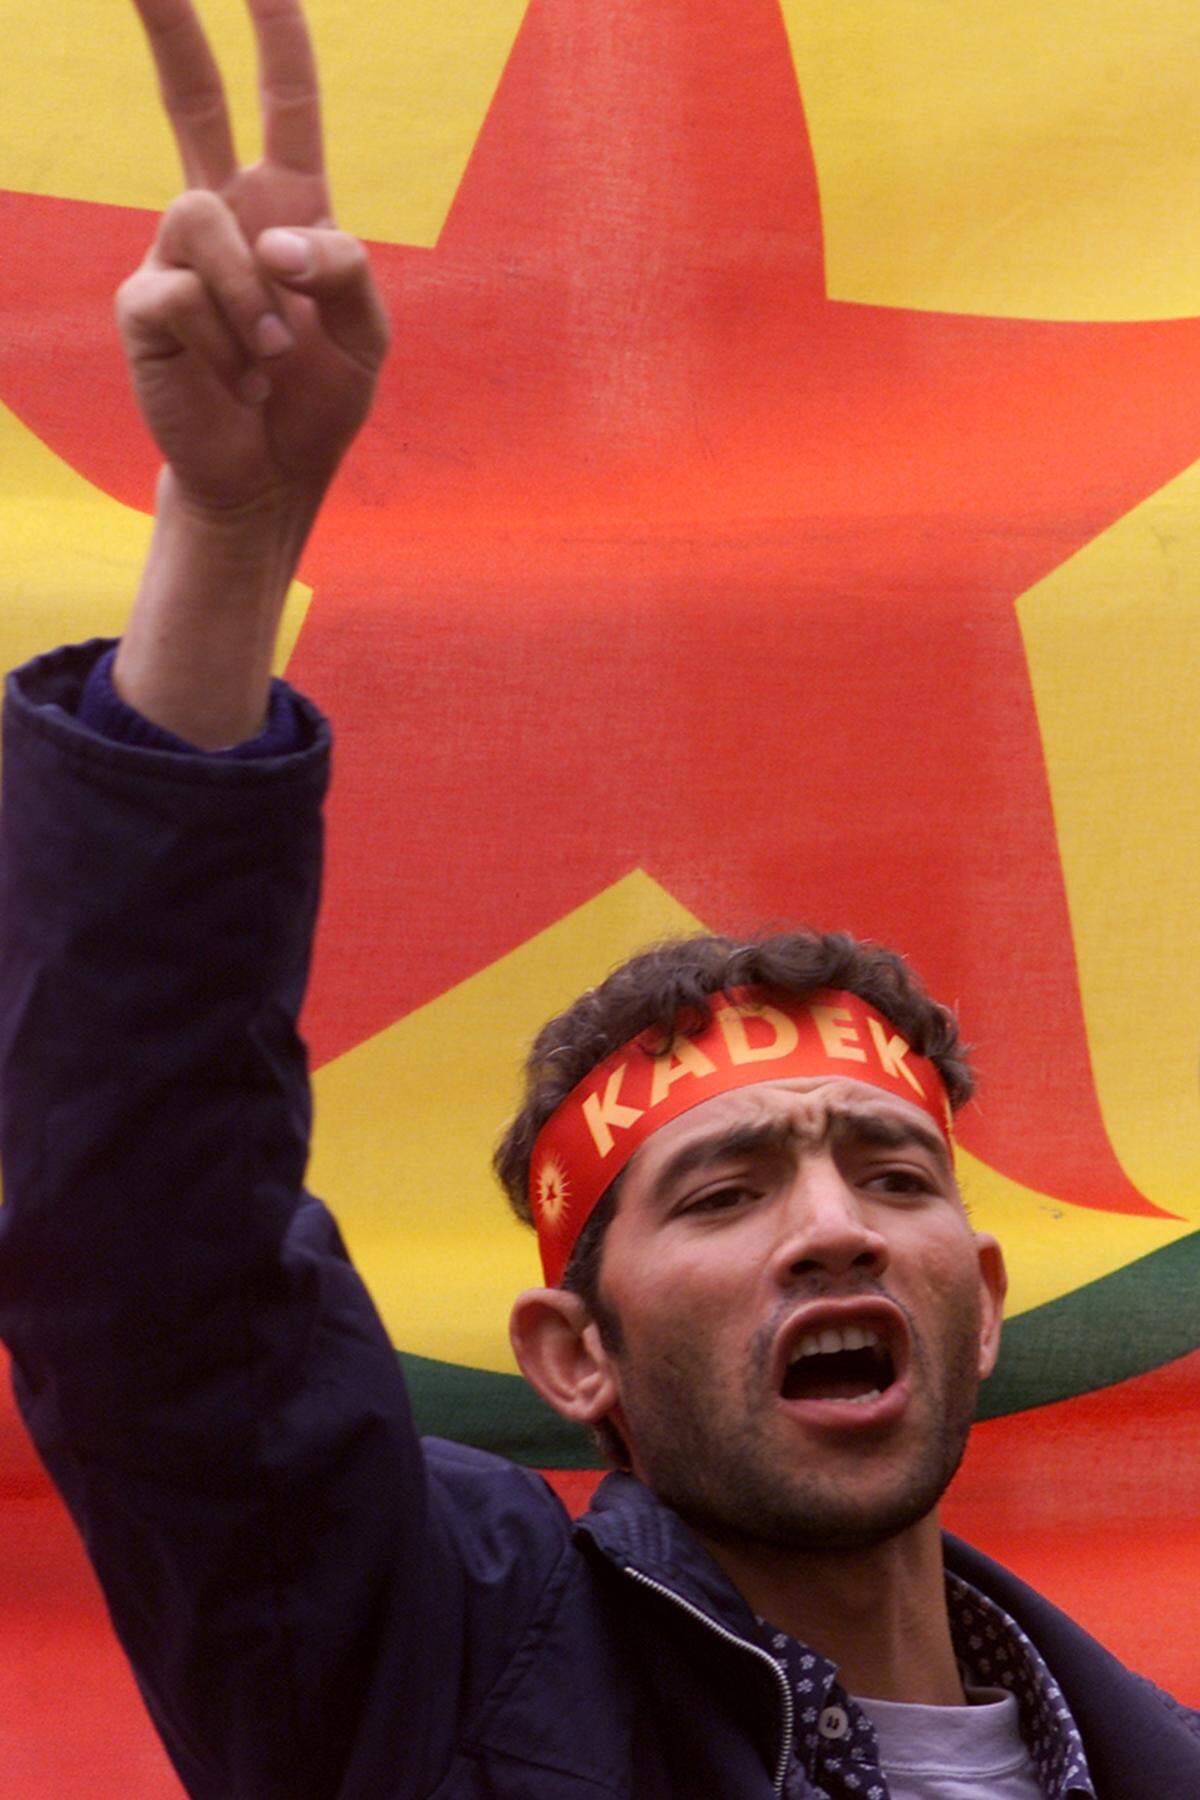 2002 löste sich die PKK offiziell auf. Ihre Nachfolgeorganisation KADEK hatte allerdings idente Führungsstrukturen und Mitglieder. Ende 2003 wurde die KADEK in Kongra-Gel umbenannt und im Juni 2004 der seit der Verhaftung Öcalans geltende Waffenstillstand aufgekündigt. Im Juni 2007 erfolgte schließlich die Umbenennung zu Koma Civakên Kurdistan - nach wie vor ist aber der Name PKK am geläufigsten.